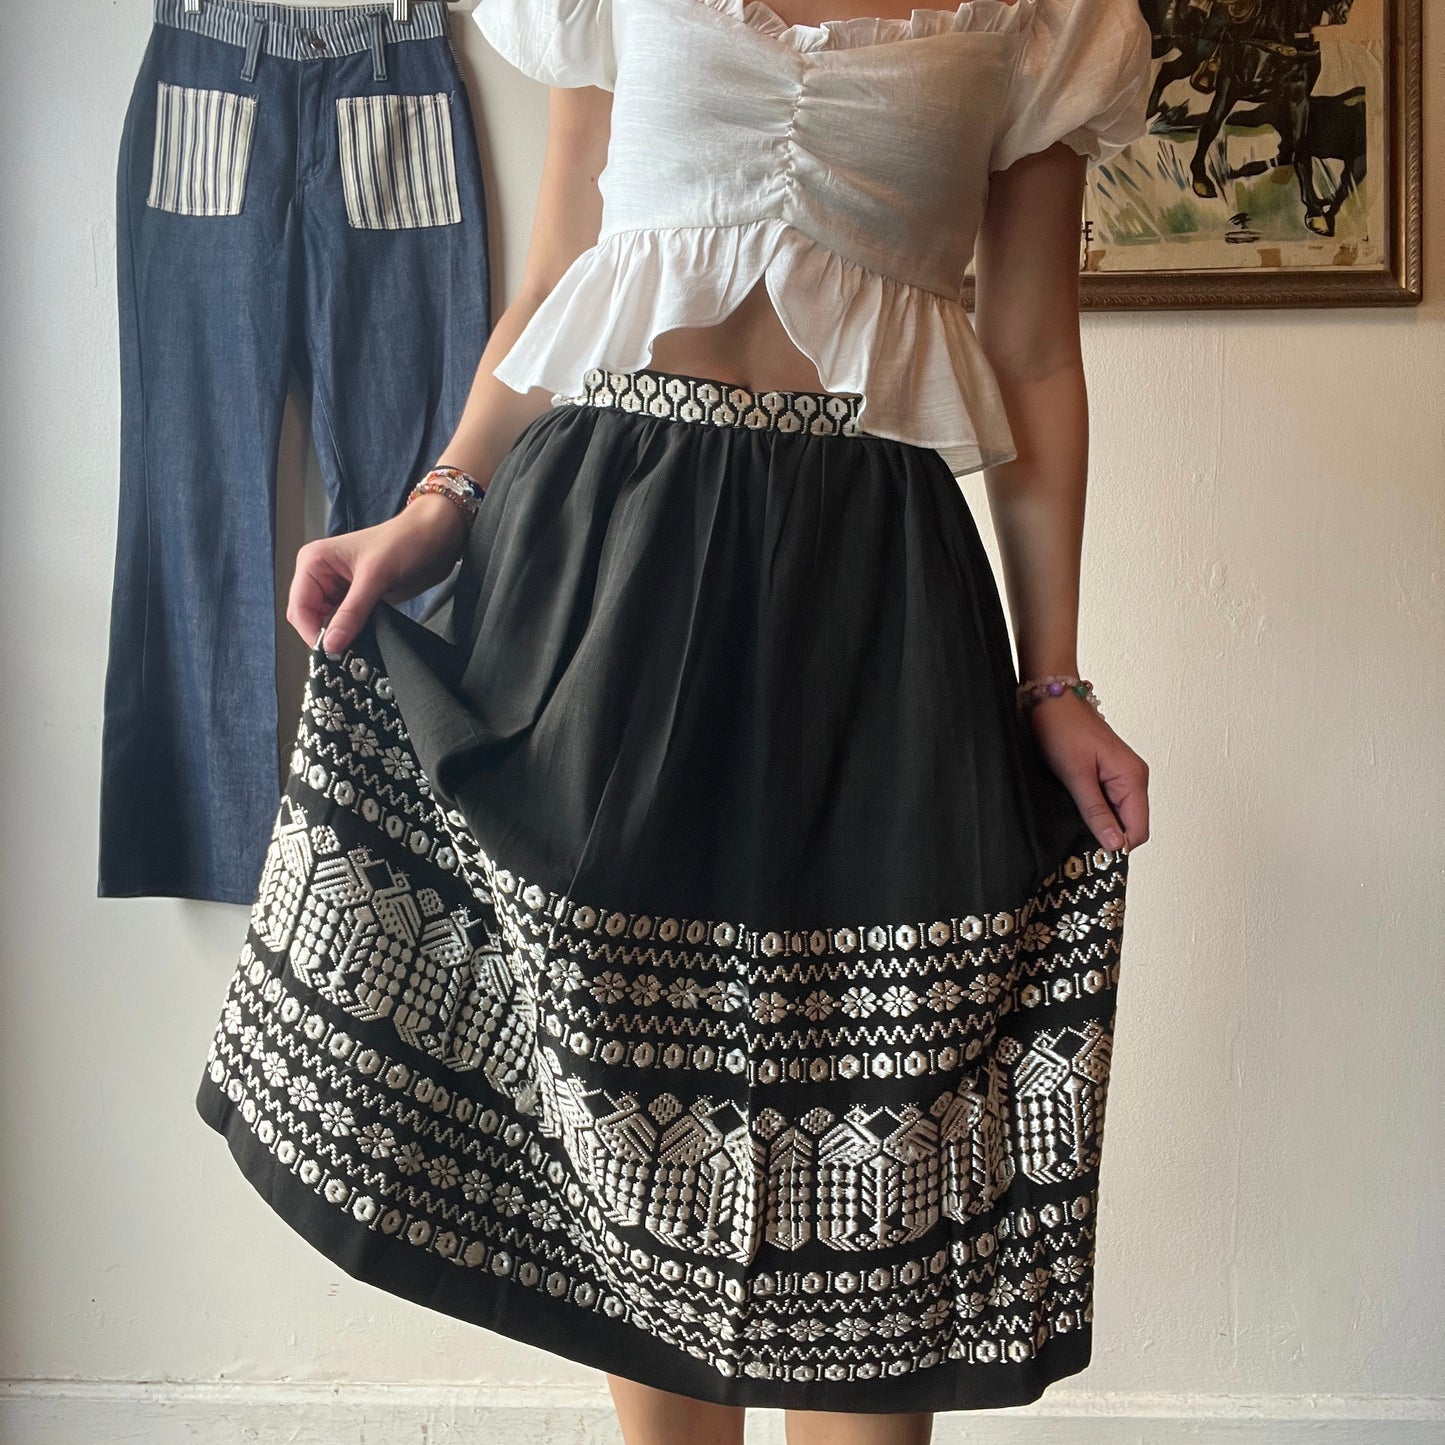 Vtg Black & White Embroidered Mexican Skirt 26"W